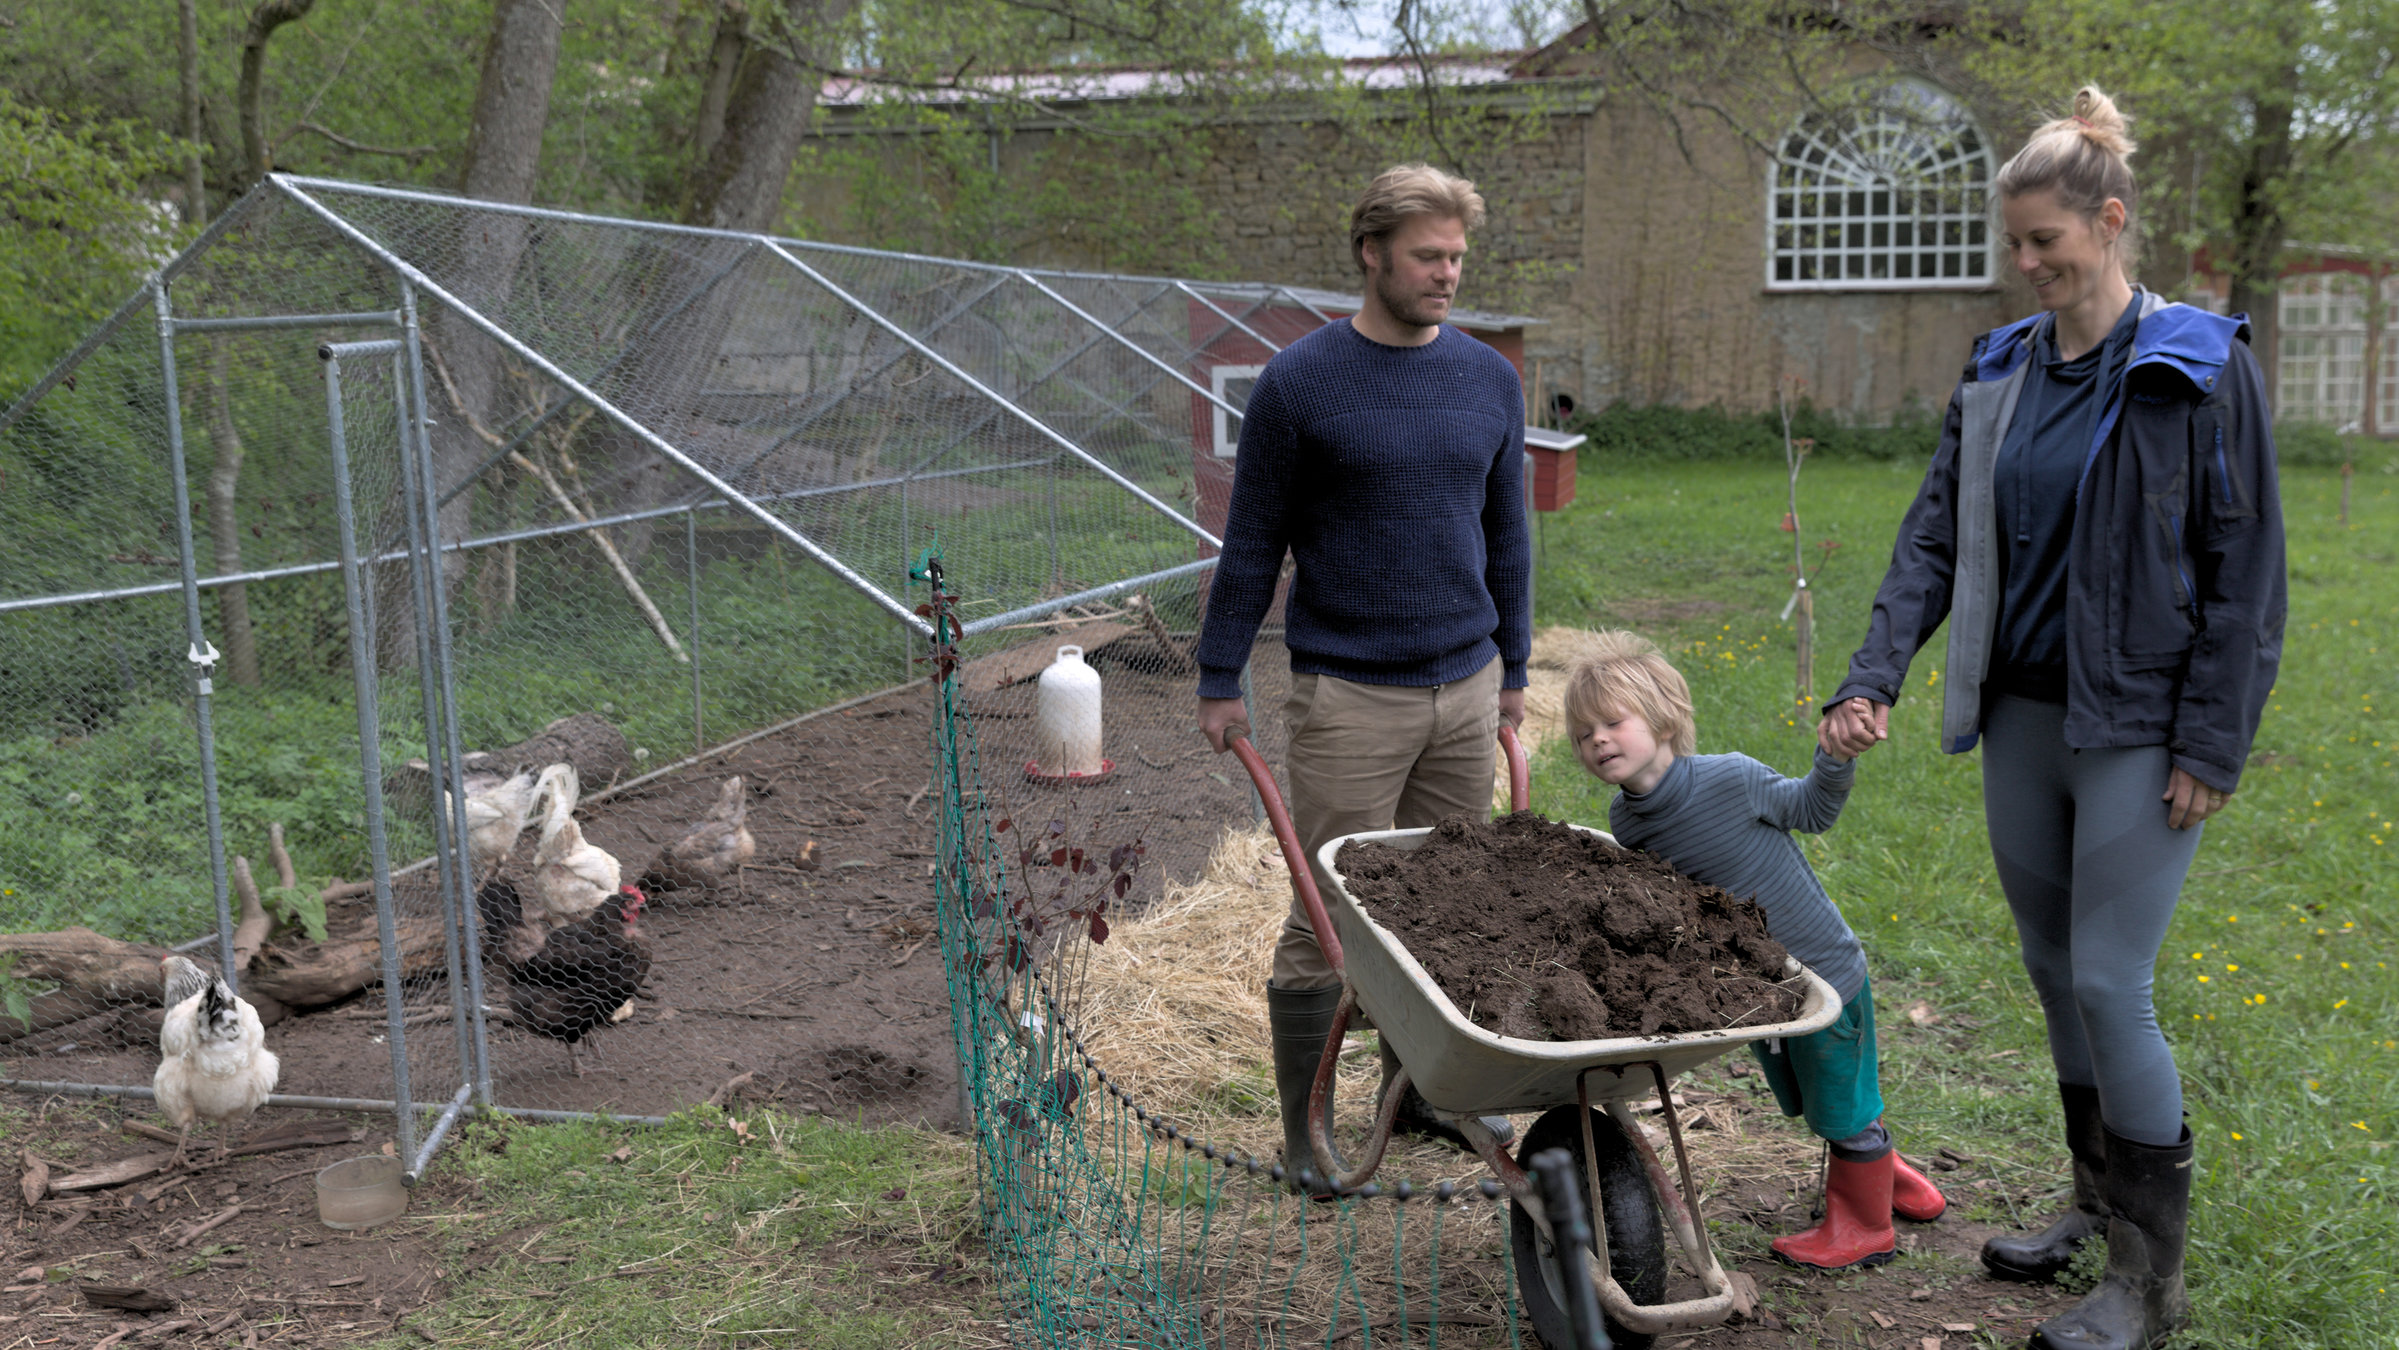 "37° Unsere eigene Farm - Selbstversorgen lernen": Michael und Sara stehen ihrem kleinen Sohn Max und einer Schubkarre, gefüllt mit Erde, neben dem Außengehege eines Hühnerstalls. Man sieht auch weiße und braune Hühner.